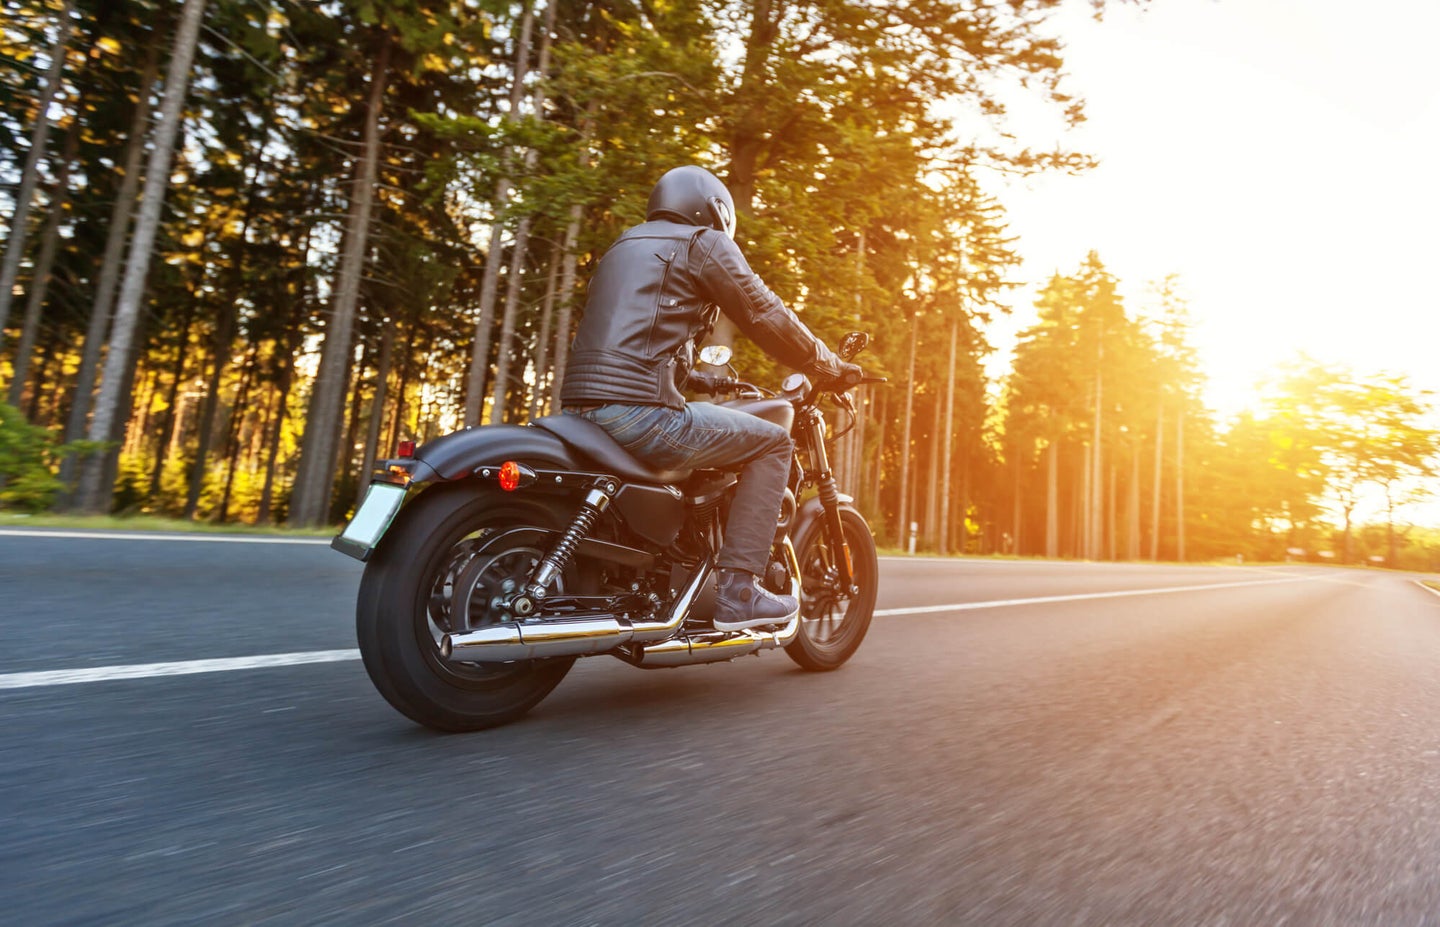 最佳摩托车TPMS:骑车时检查轮胎气压